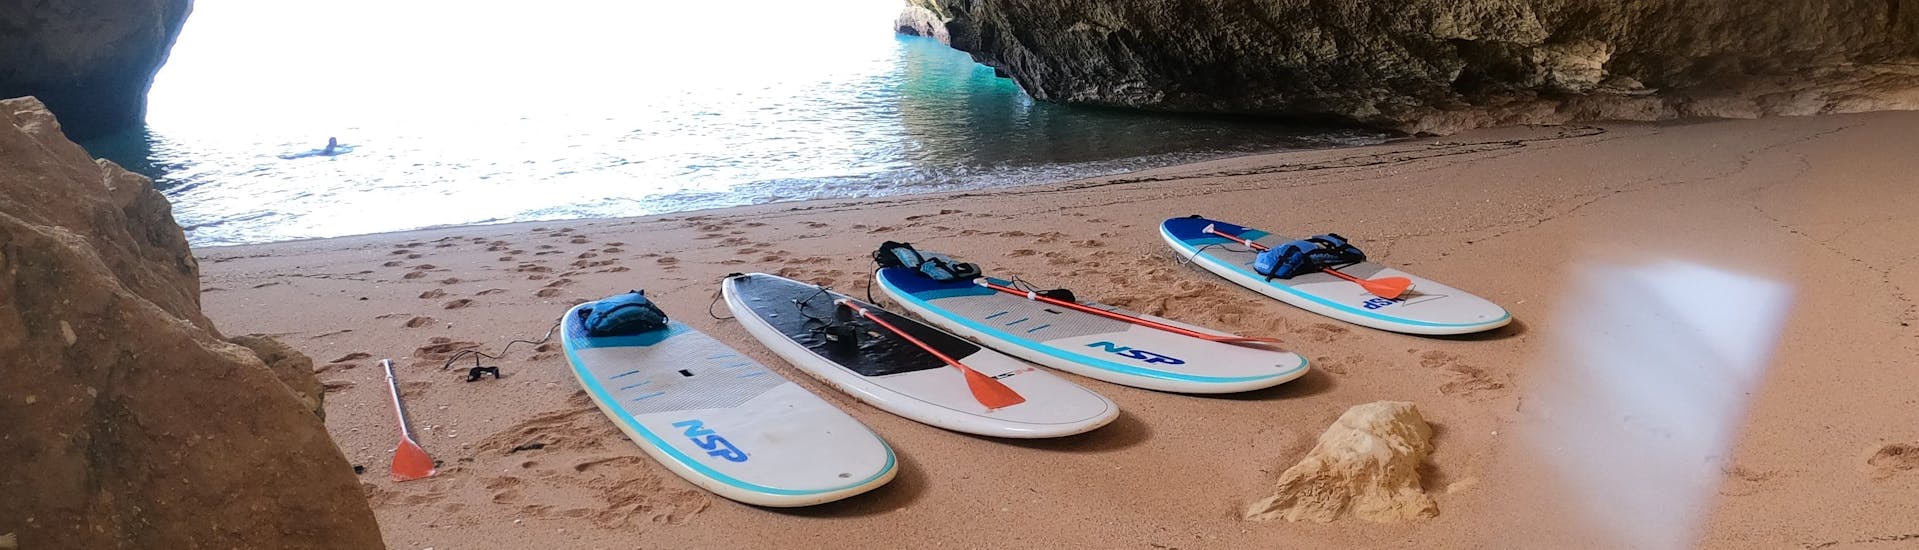 De boards liggen op het zand terwijl we de grotten verkennen tijdens de Stand Up Paddle Tour naar de Benagil Grotten met SUPA Sea Adventures Algarve.